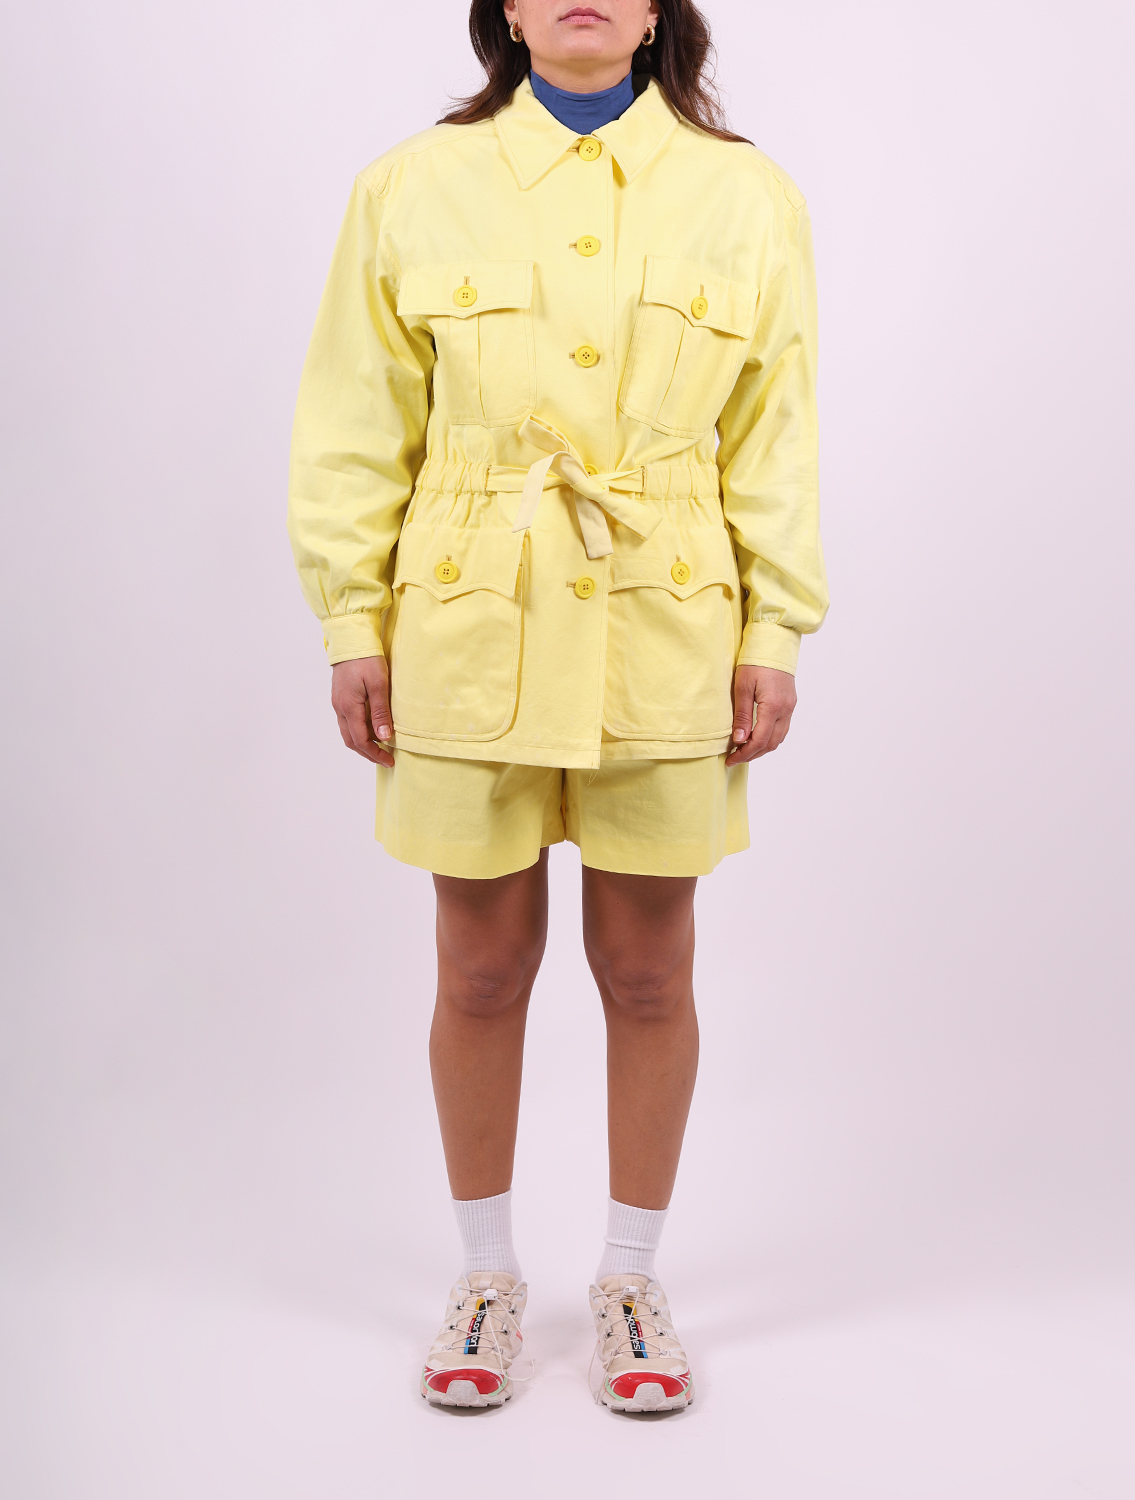 Completo giacca e pantaloncino donna giallo